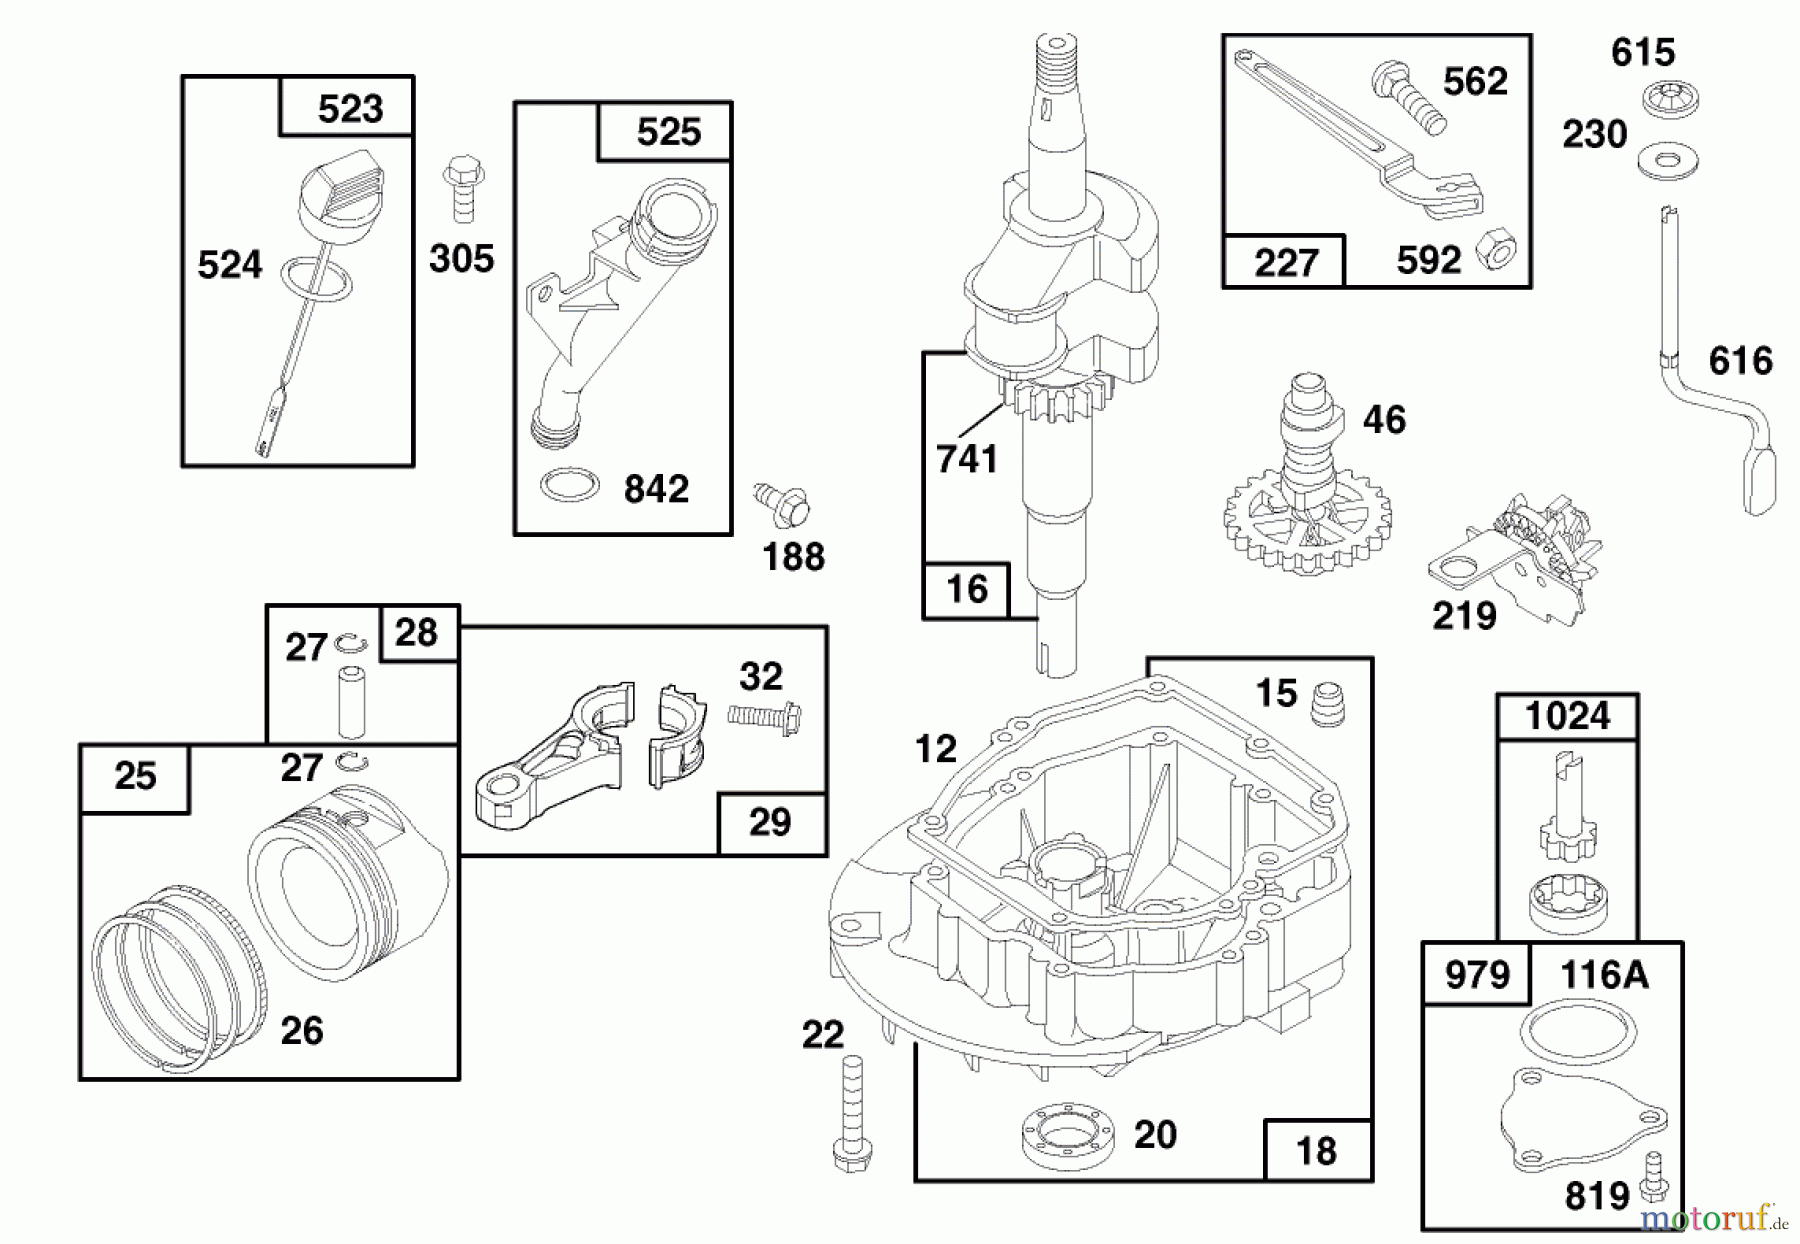  Toro Neu Mowers, Walk-Behind Seite 1 20466 - Toro Lawnmower, 1996 (6900001-6999999) ENGINE GTS 150 (MODEL NO. 20465 ONLY) #2